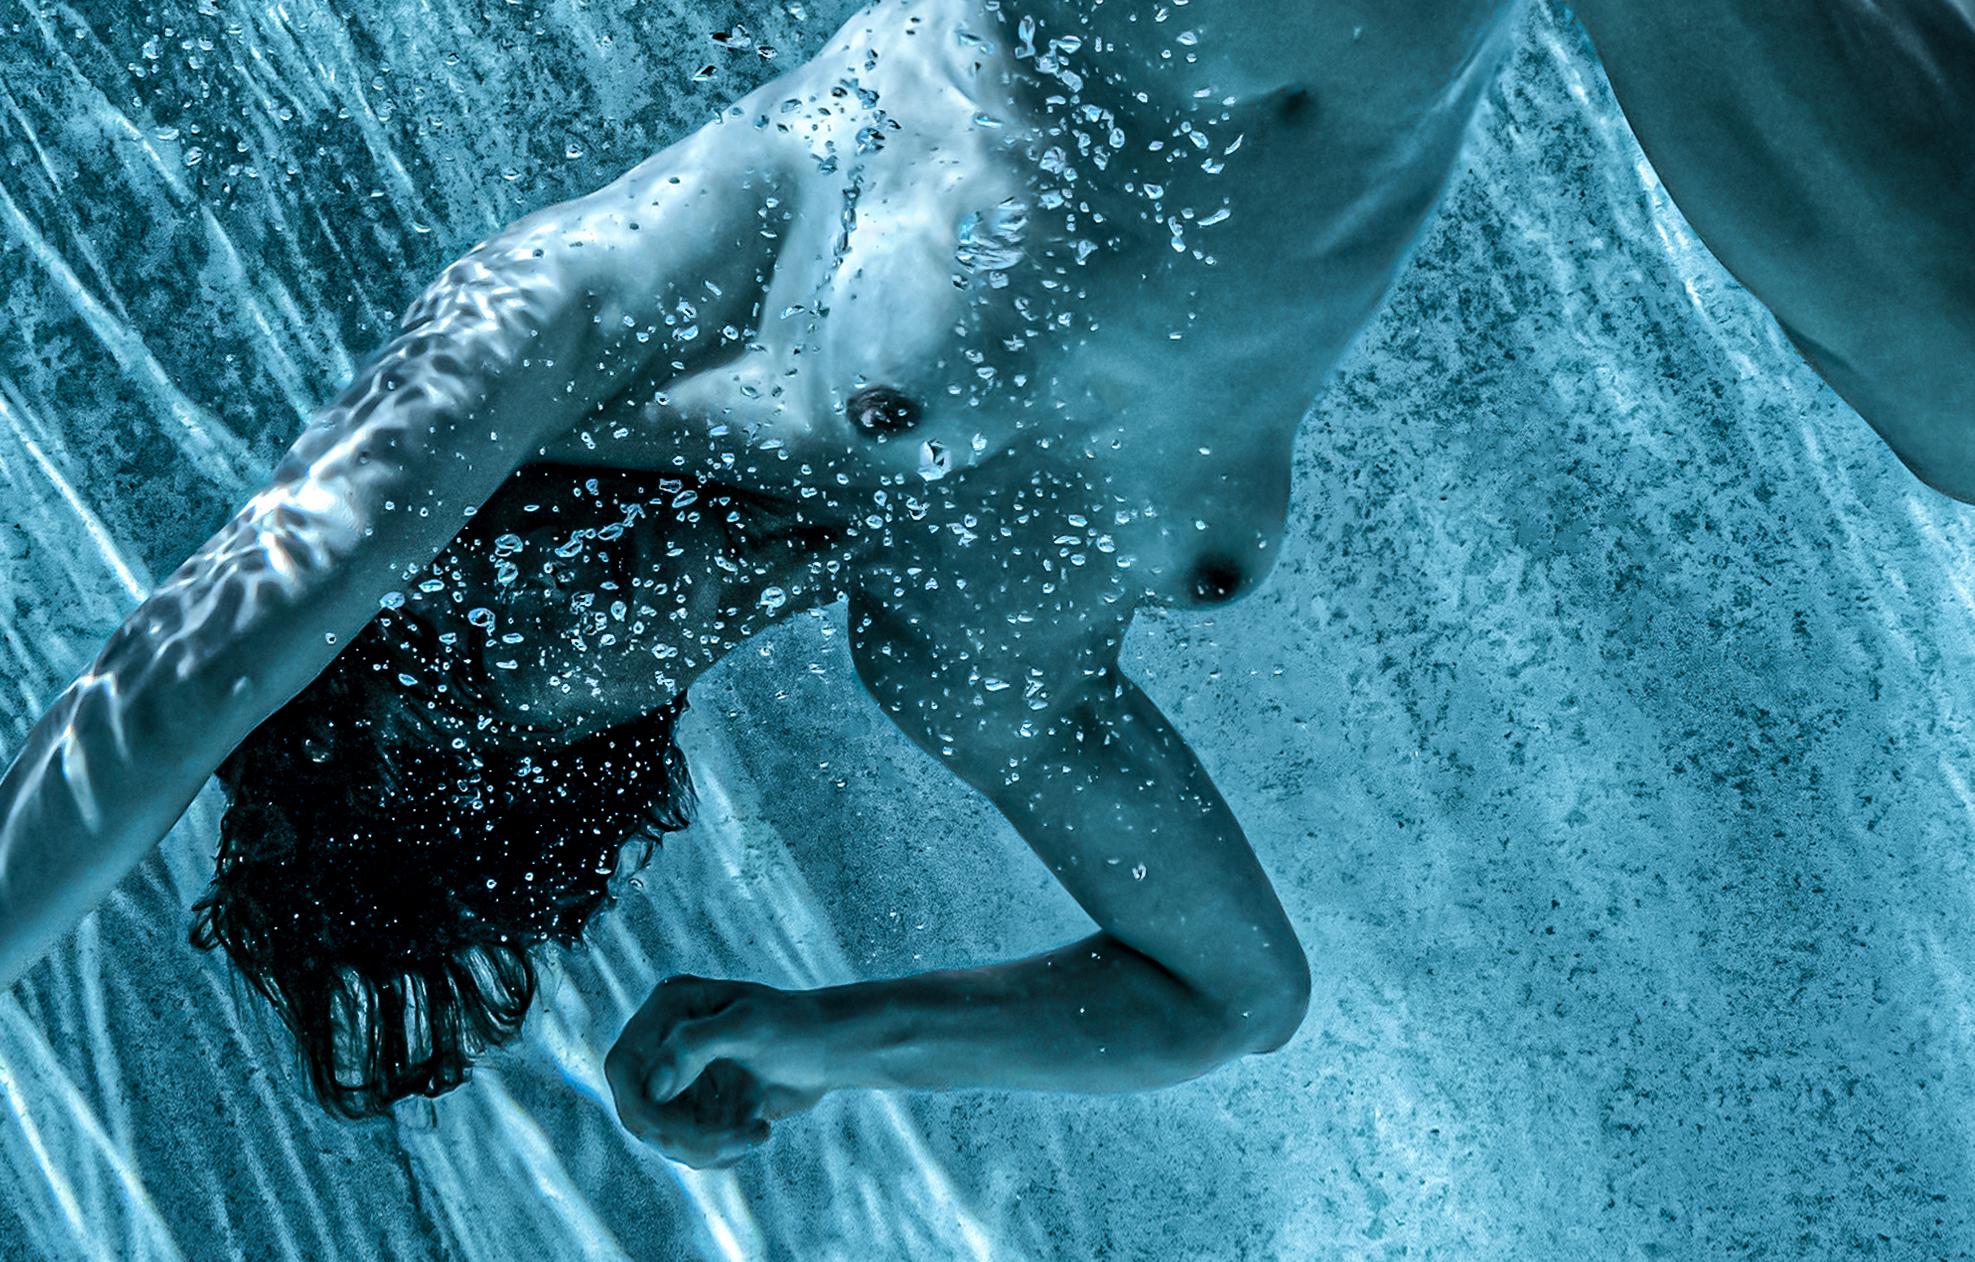 Eine schöne  und anspruchsvolles Unterwasserfoto einer jungen nackten Frau im Schwimmbad.  Es handelt sich um eine Schwarz-Weiß-Fotografie mit einer aquatischen Tönung, die an Schwarz-Weiß erinnert. Dies ist das dritte Foto aus der